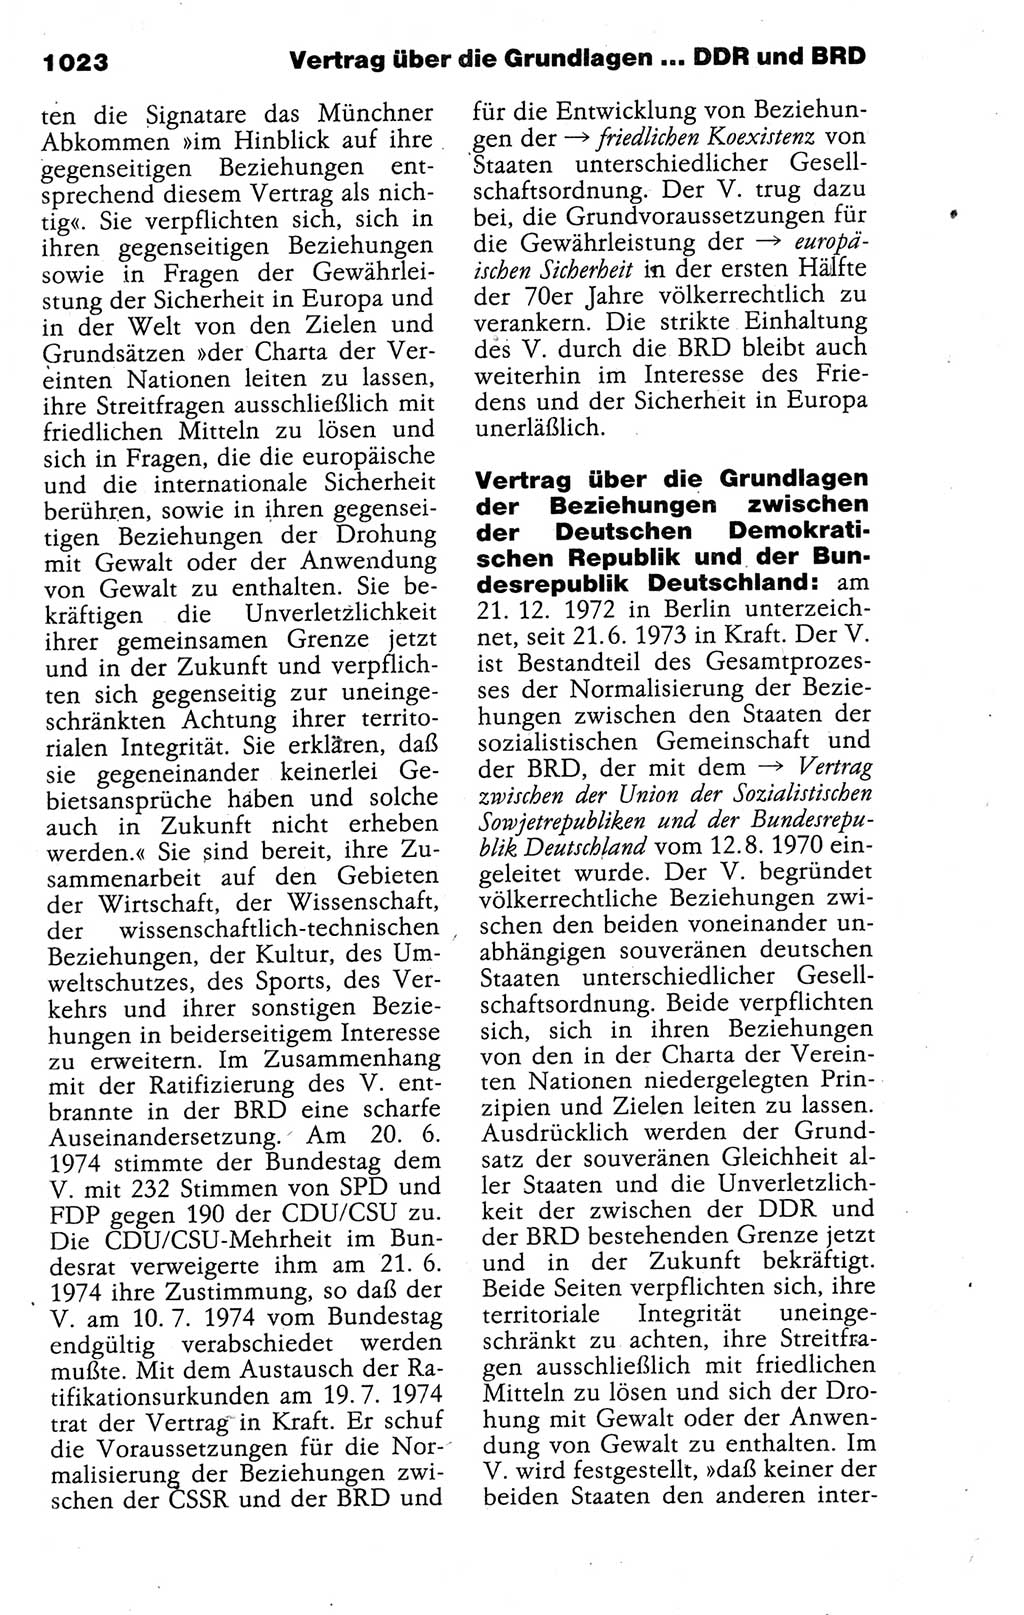 Kleines politisches Wörterbuch [Deutsche Demokratische Republik (DDR)] 1988, Seite 1023 (Kl. pol. Wb. DDR 1988, S. 1023)